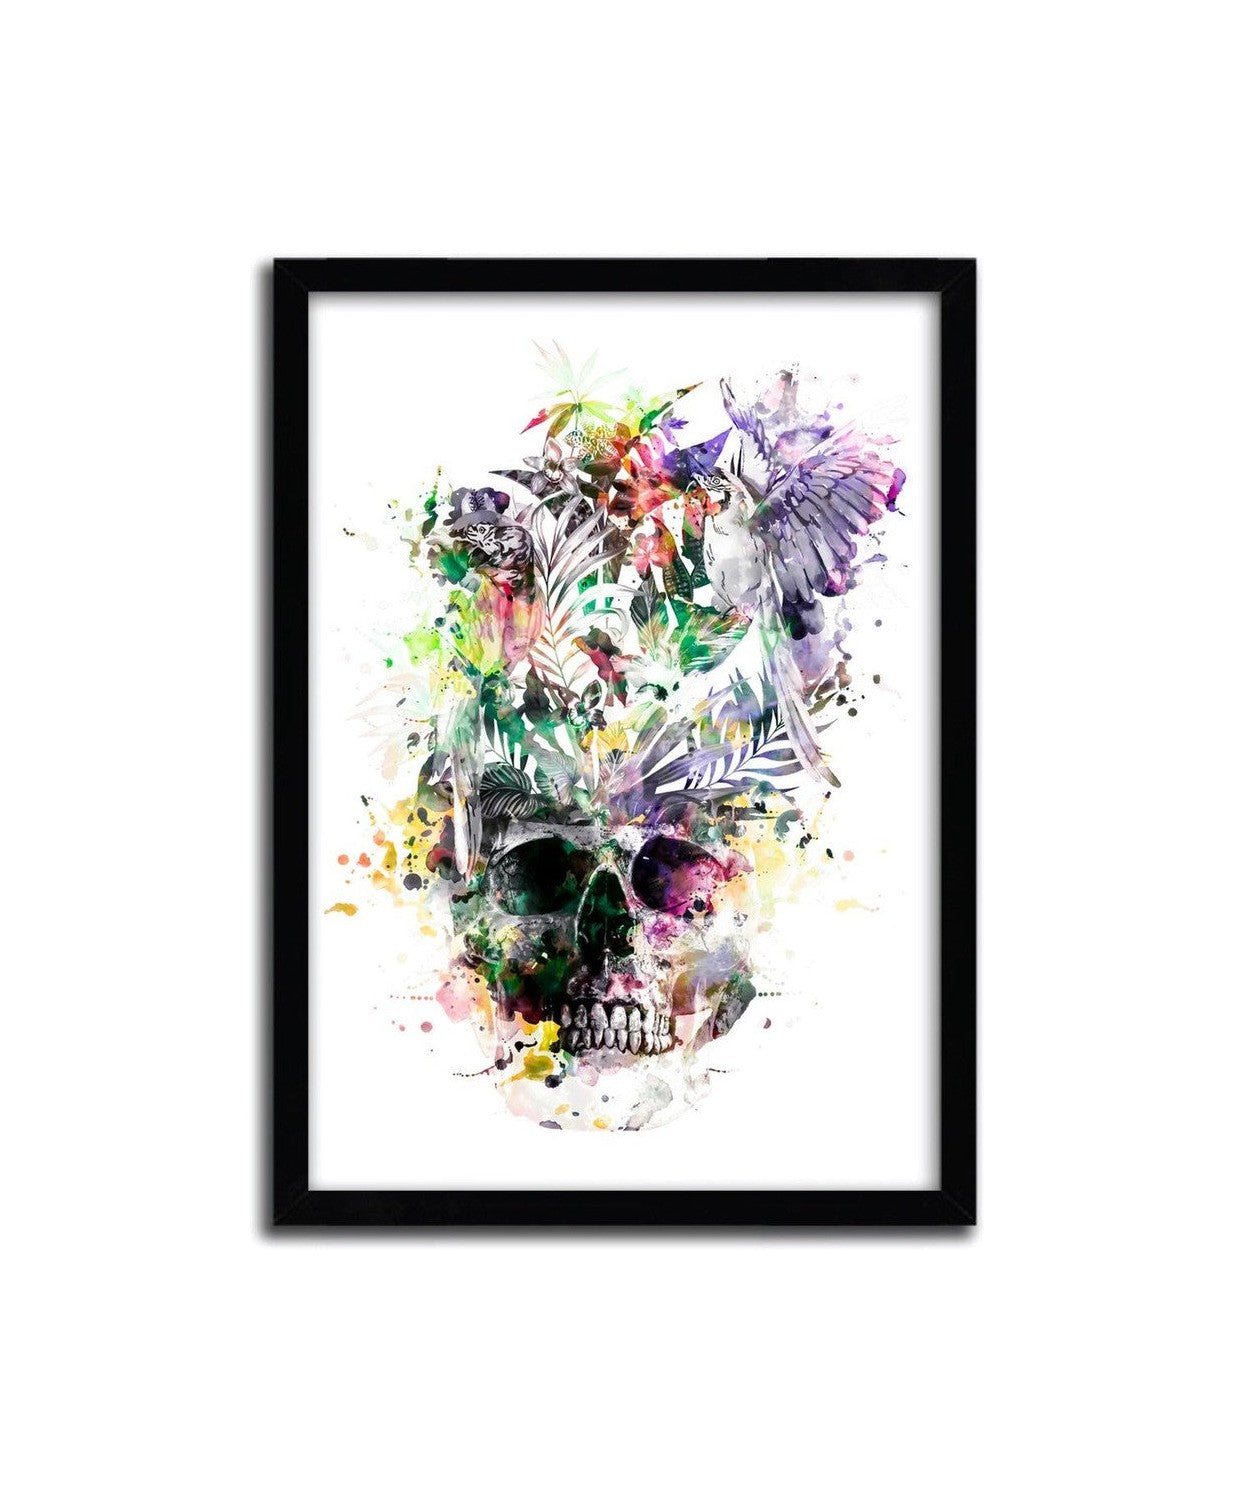 Affiche Skull Parrots par Riza Peker